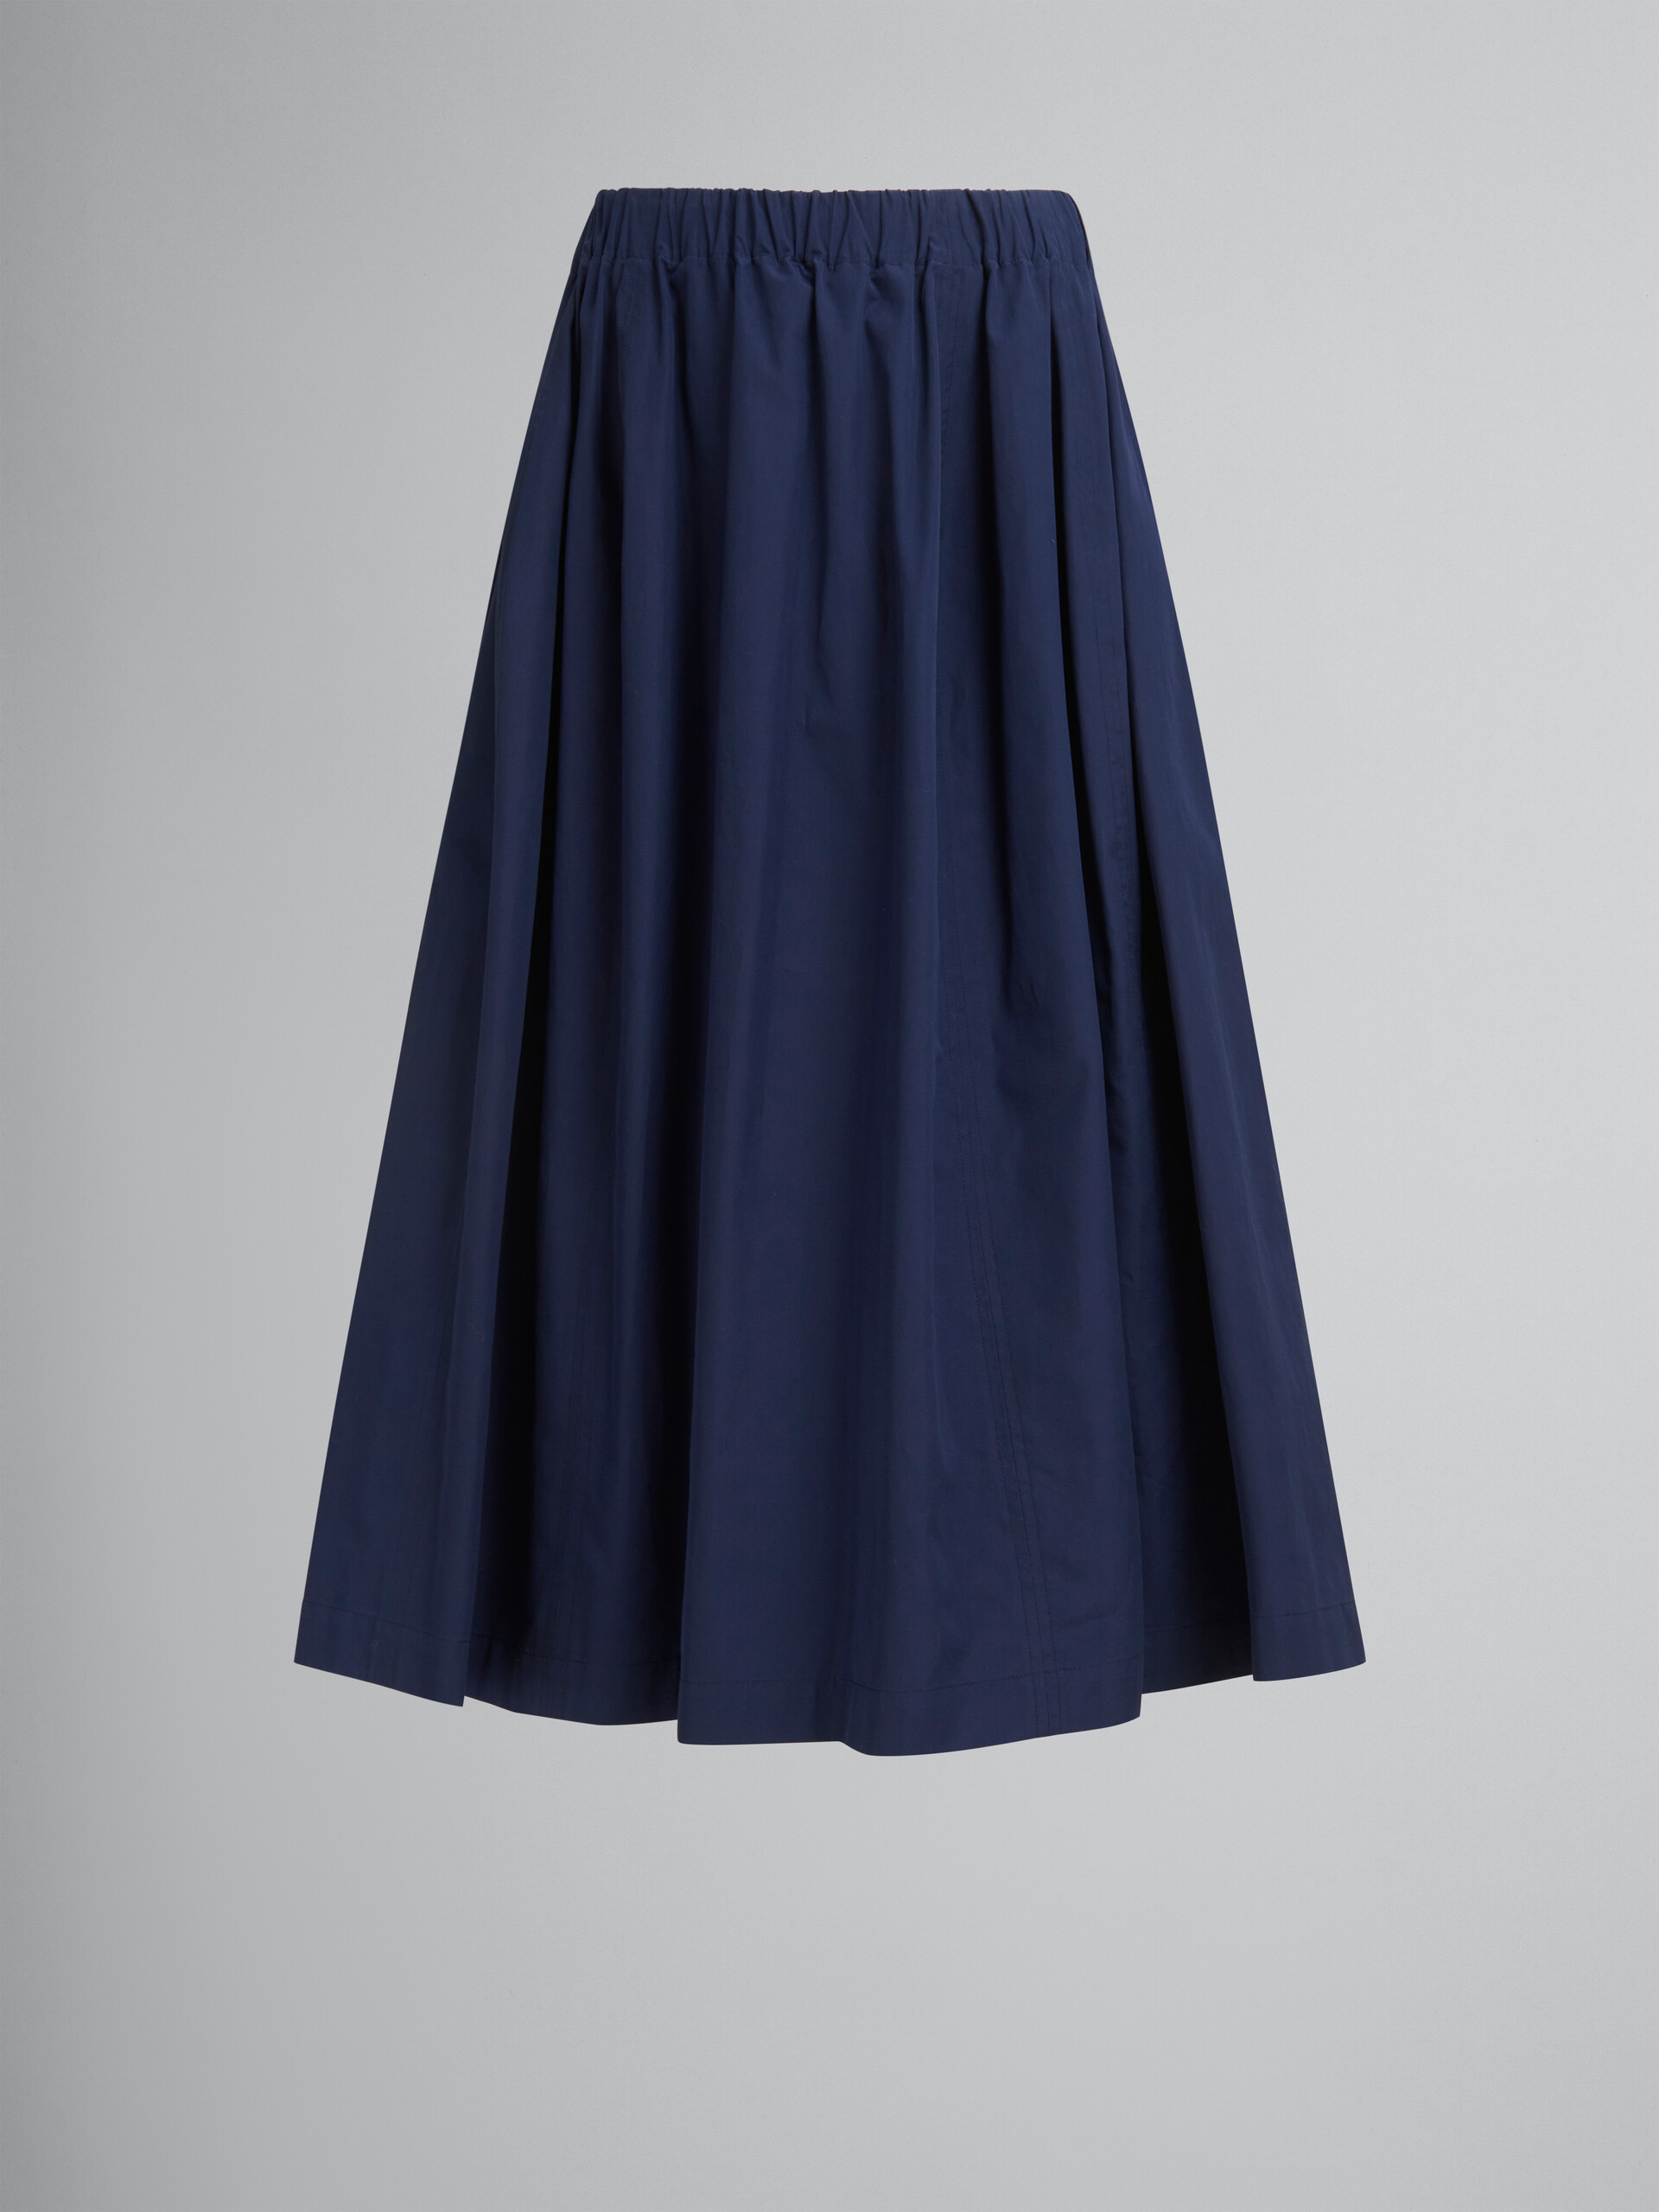 ブルー オーガニックポプリン製  伸縮性のあるミディ丈スカート - スカート - Image 1